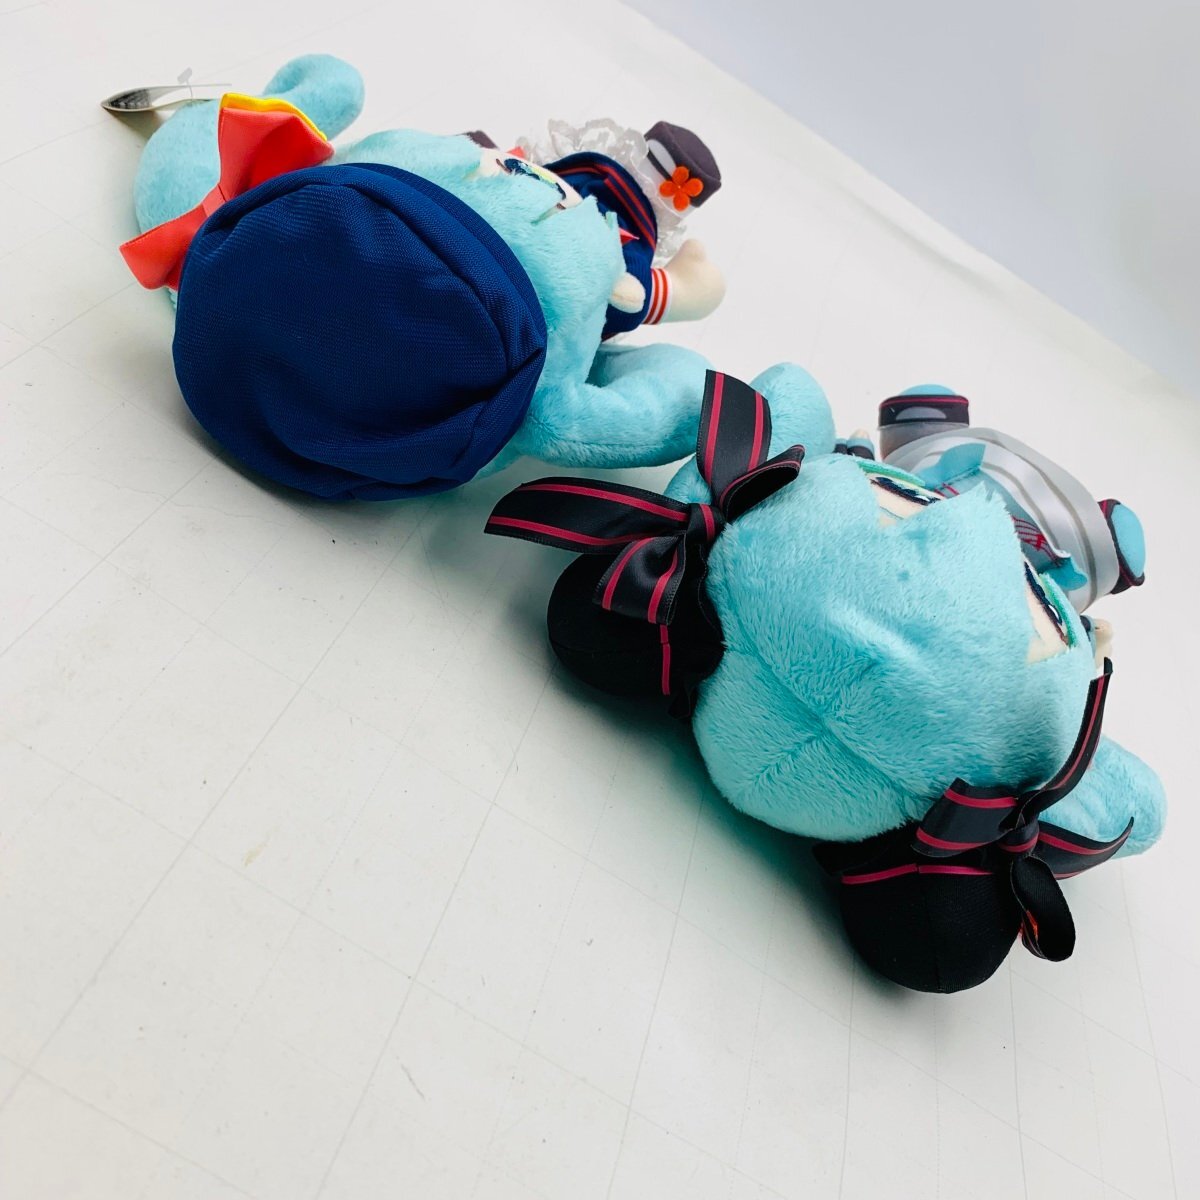  новый товар тугой - elegant image мягкая игрушка Hatsune Miku 2 вида комплект 